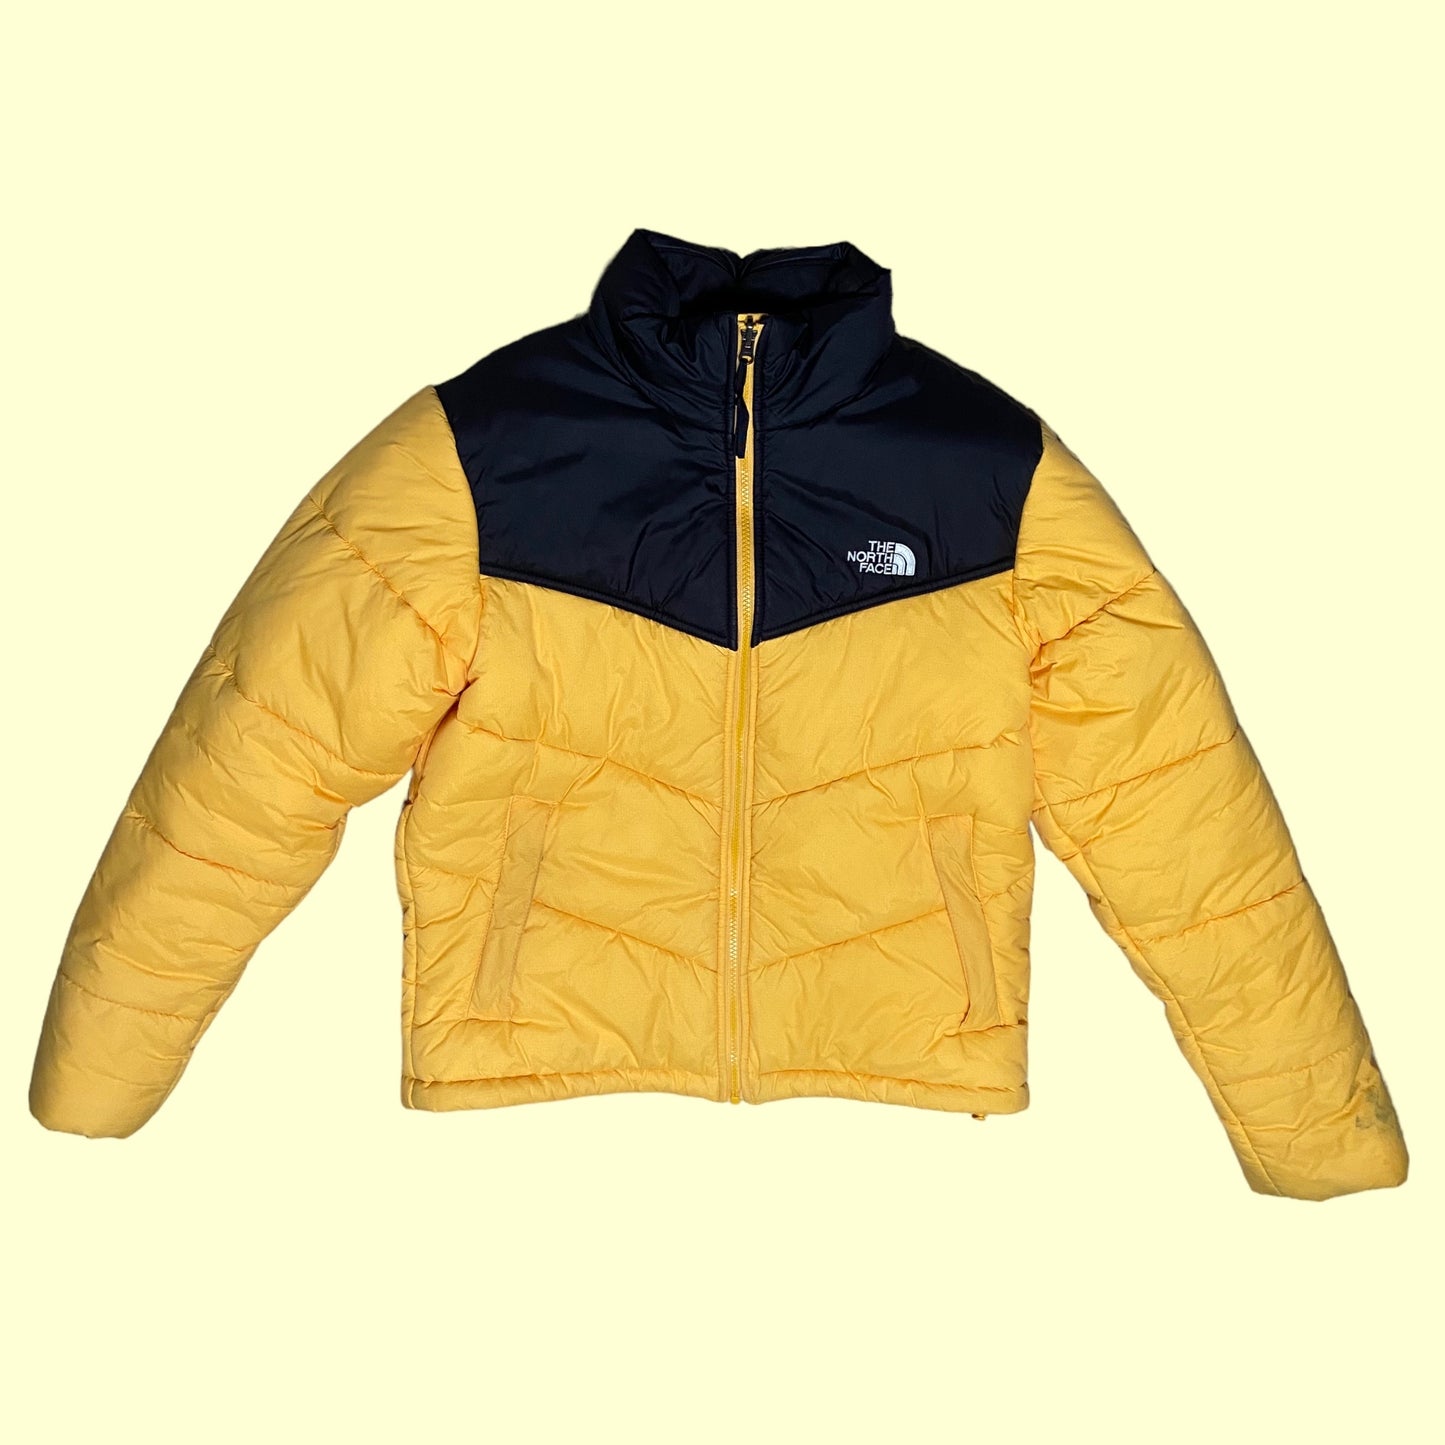 North Face Retro 1996 Nuptse jacket - S